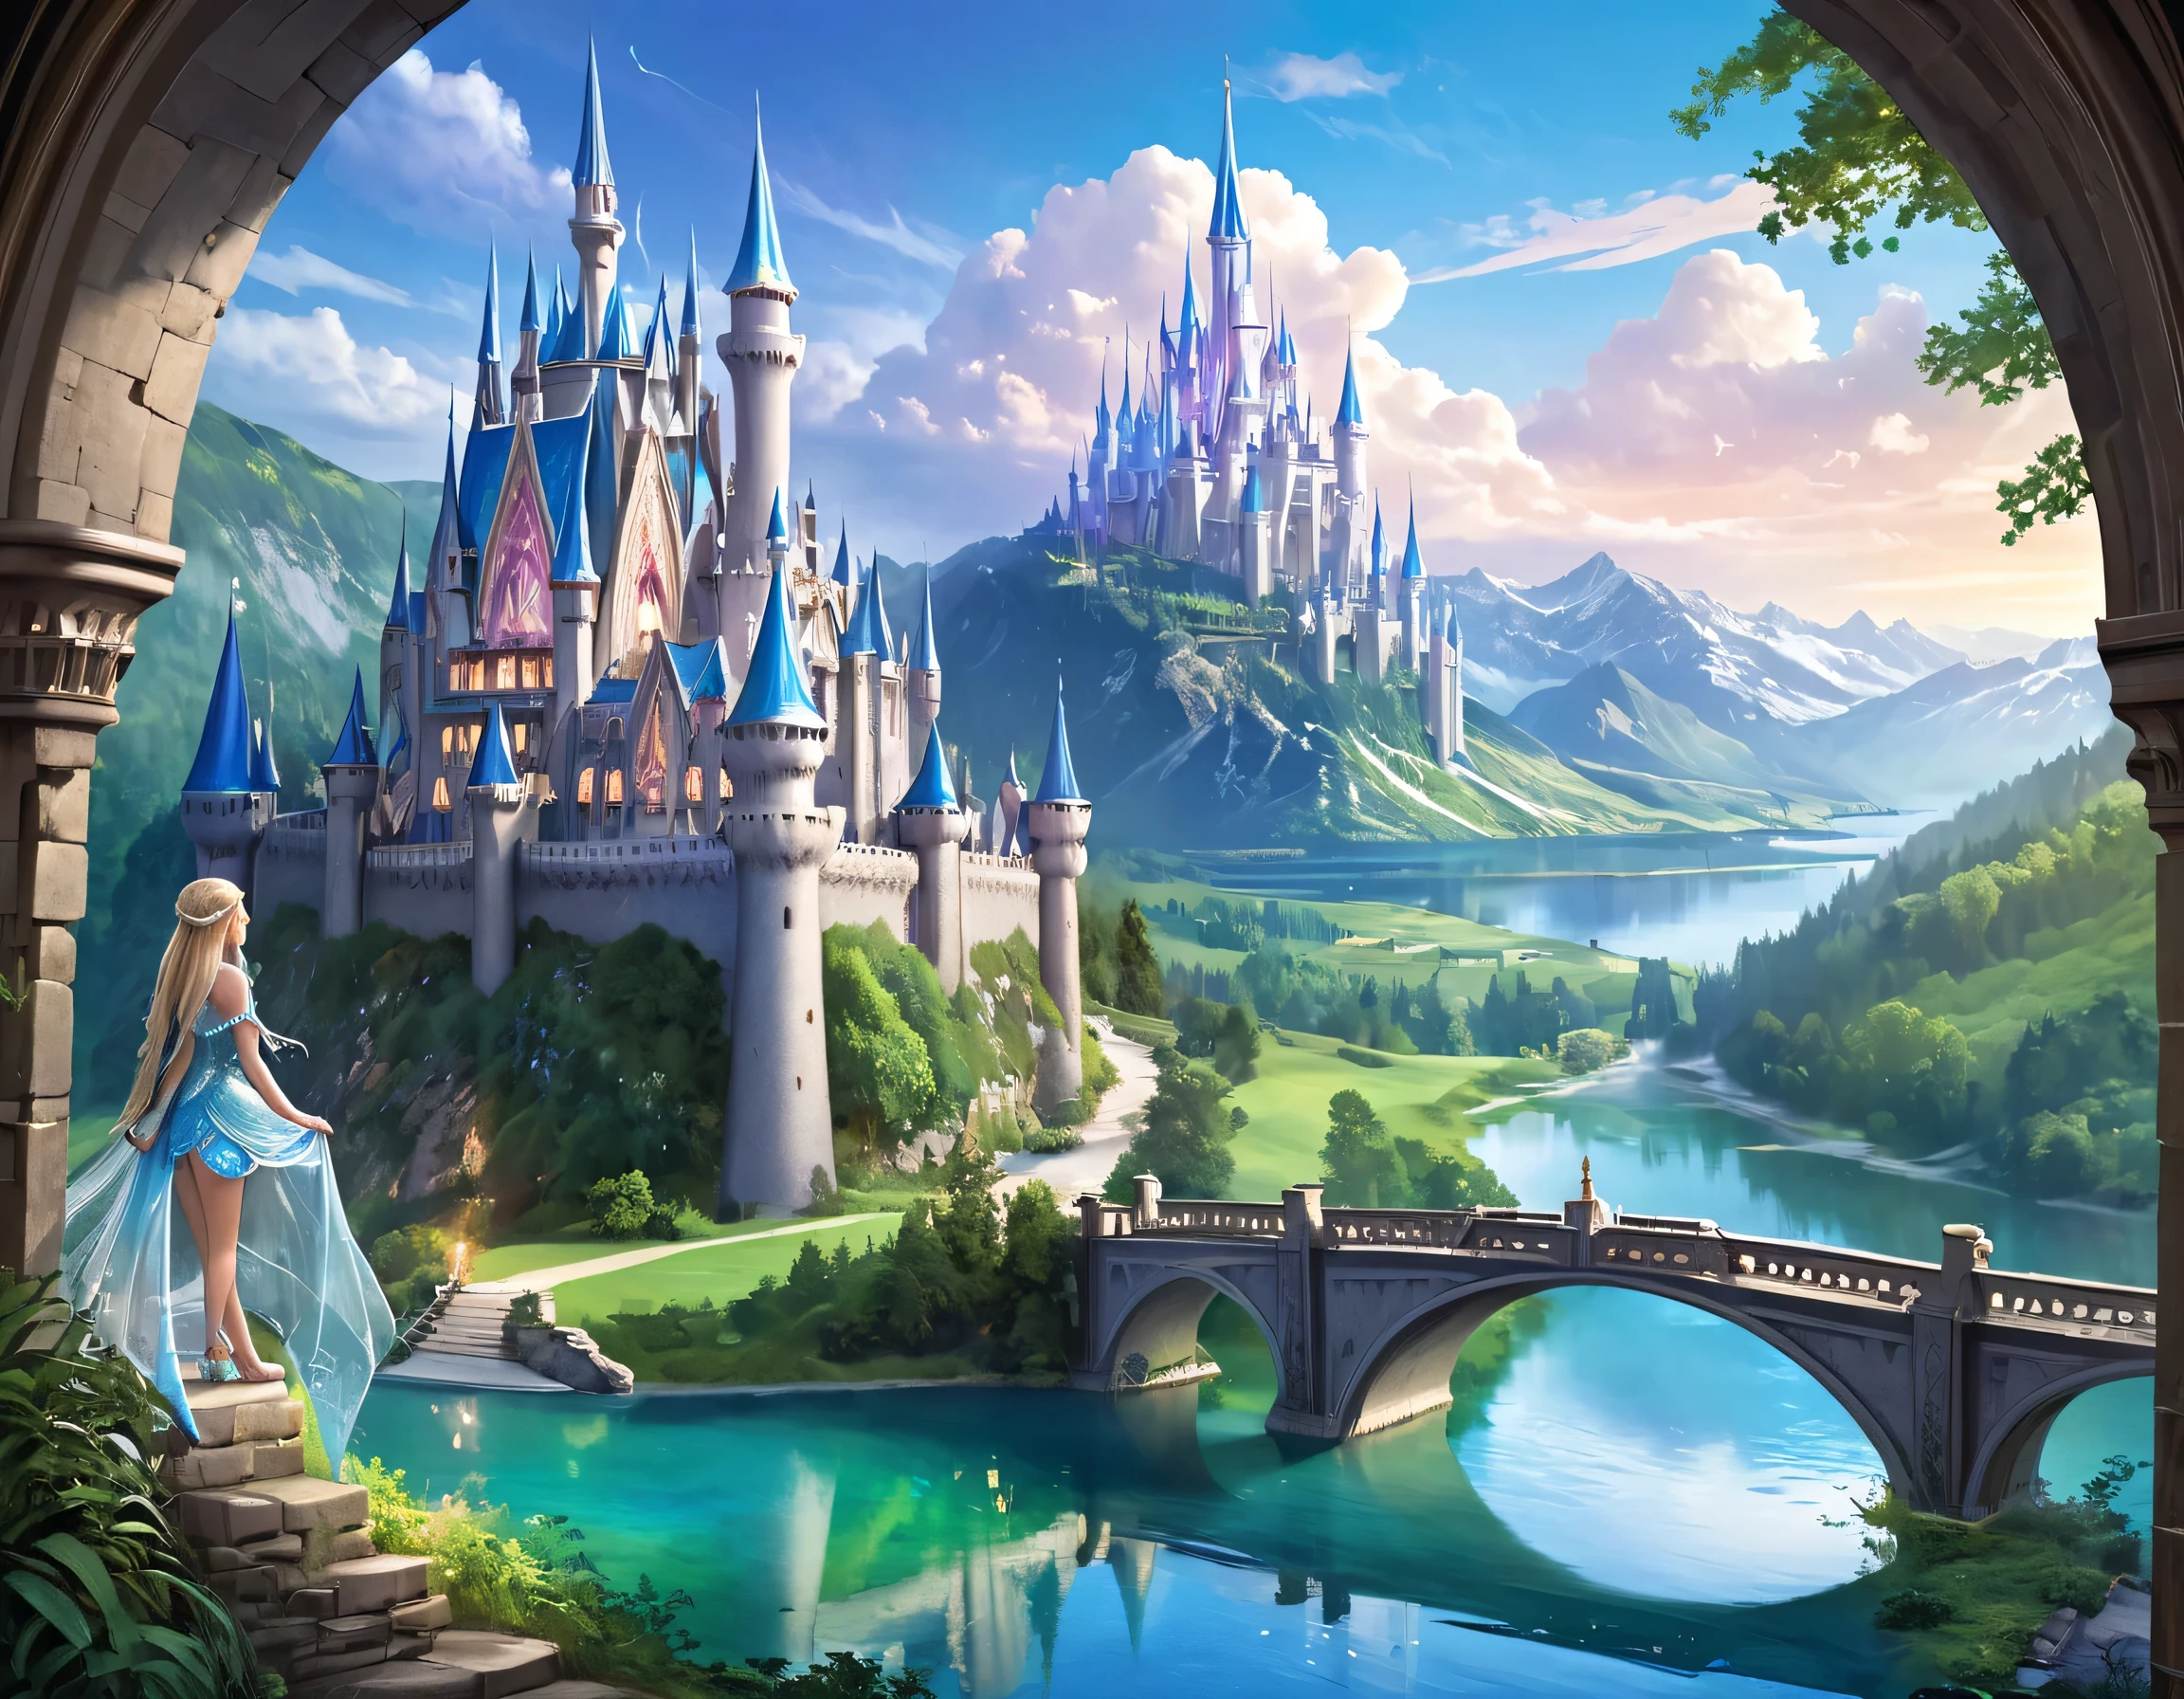 幻想藝術, 角色扮演藝術, 一位公主透過窗戶看著一座神奇的城堡, 一位美麗的精靈公主透過窗戶看到一座神奇的城堡, 一座令人印象深刻、細節最豐富的城堡, 有塔, 橋樑, 護城河, 站在彩釉山頂_Xl, 布蘭登沃爾菲爾風格頁面